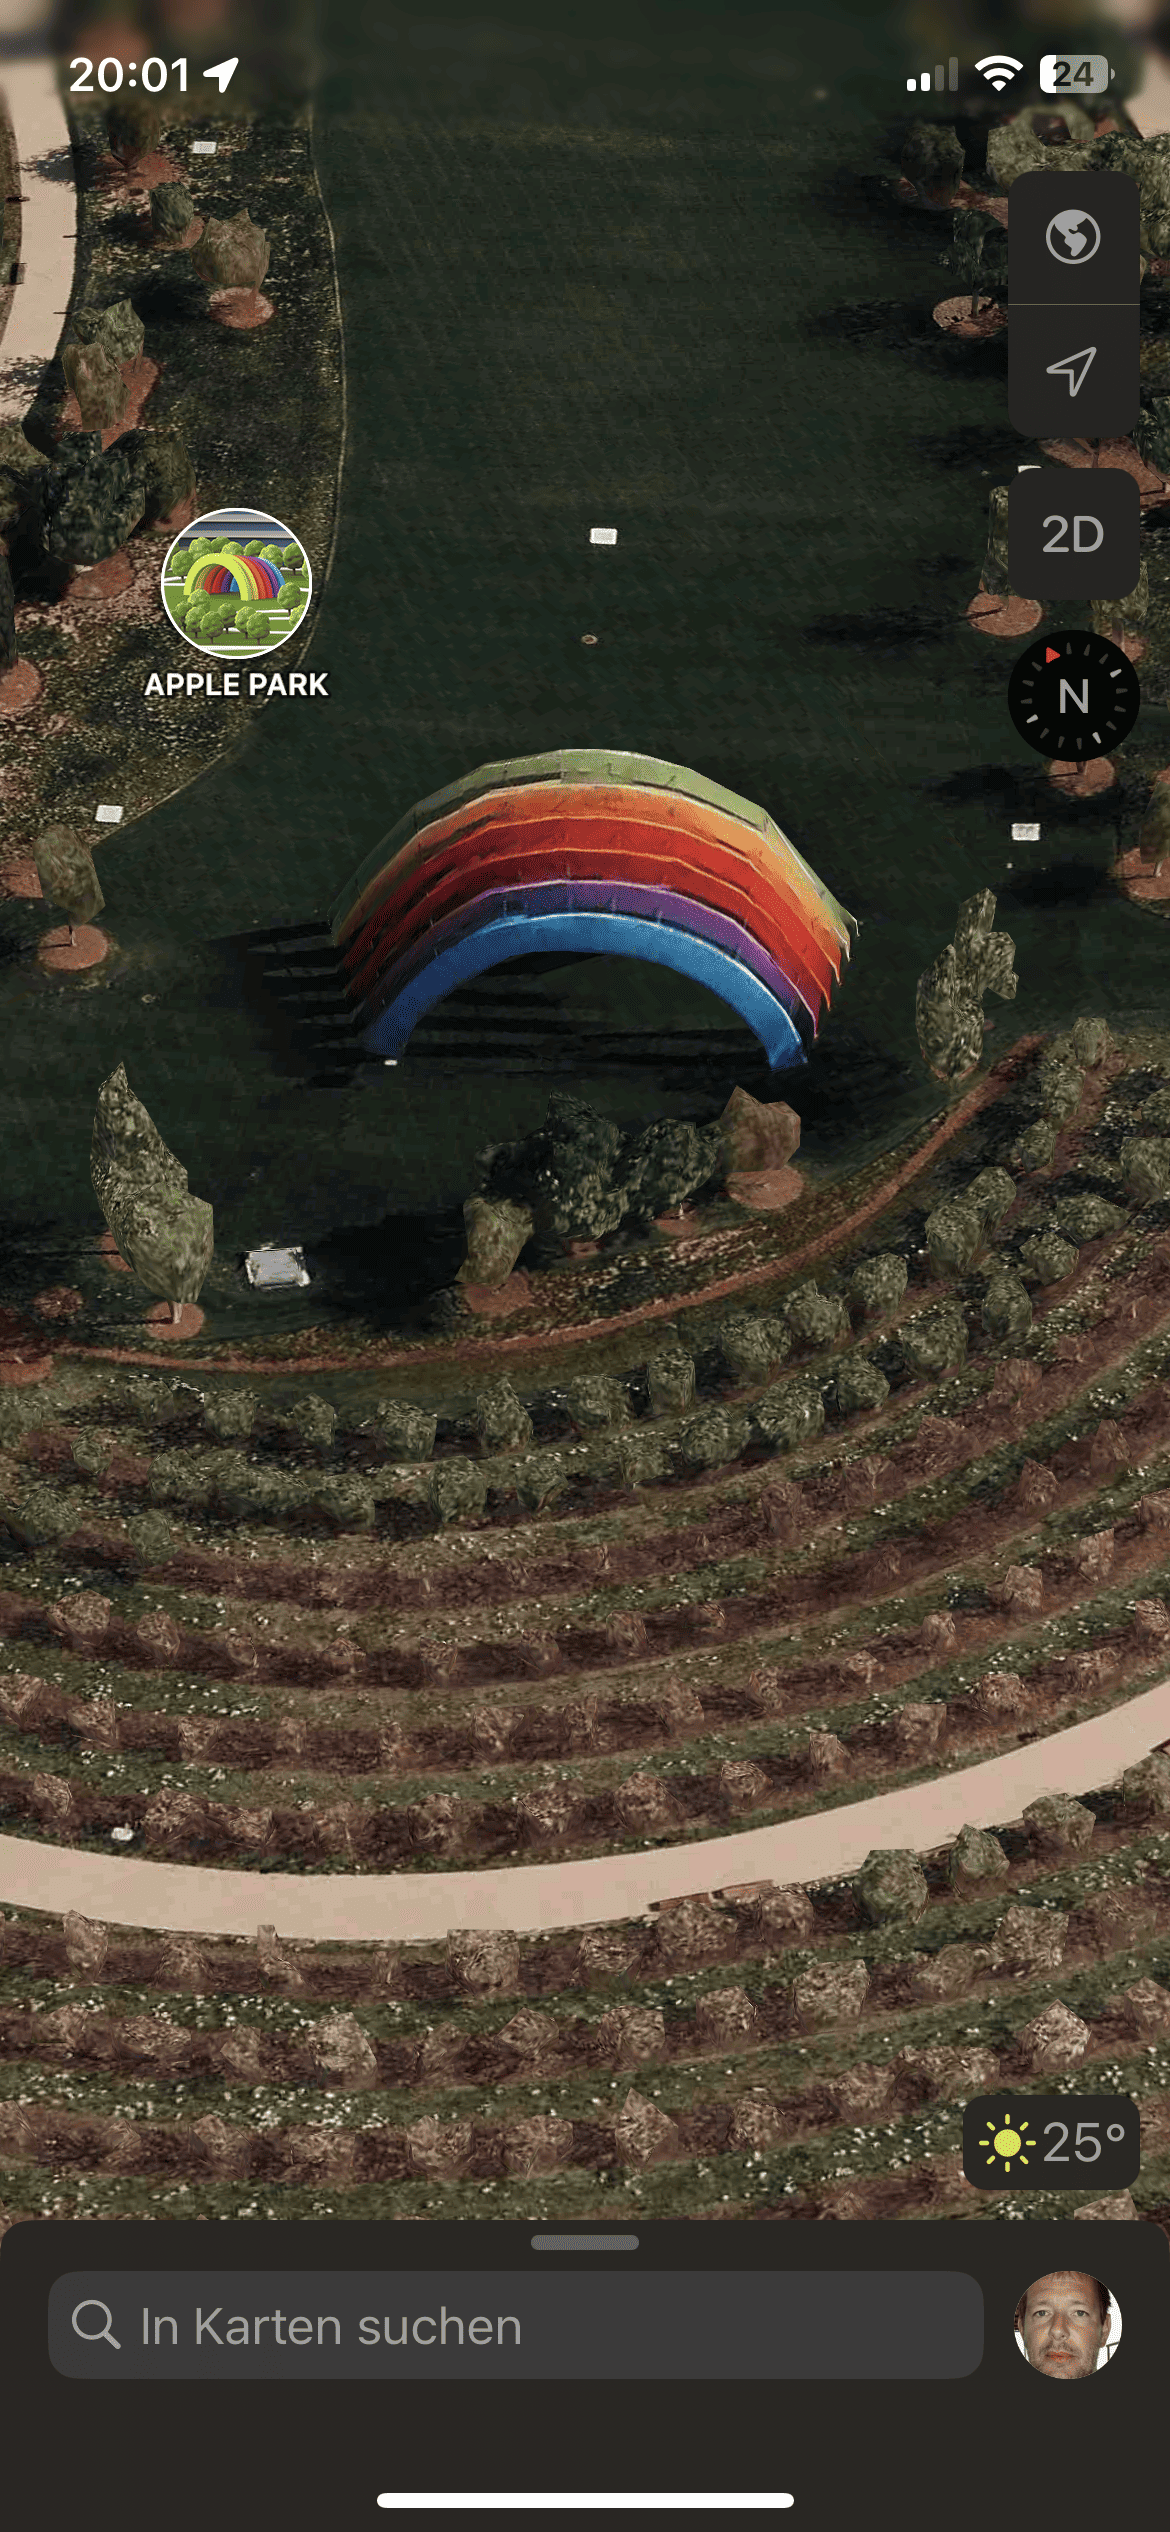 Regenbogen im Apple Park via Karten App